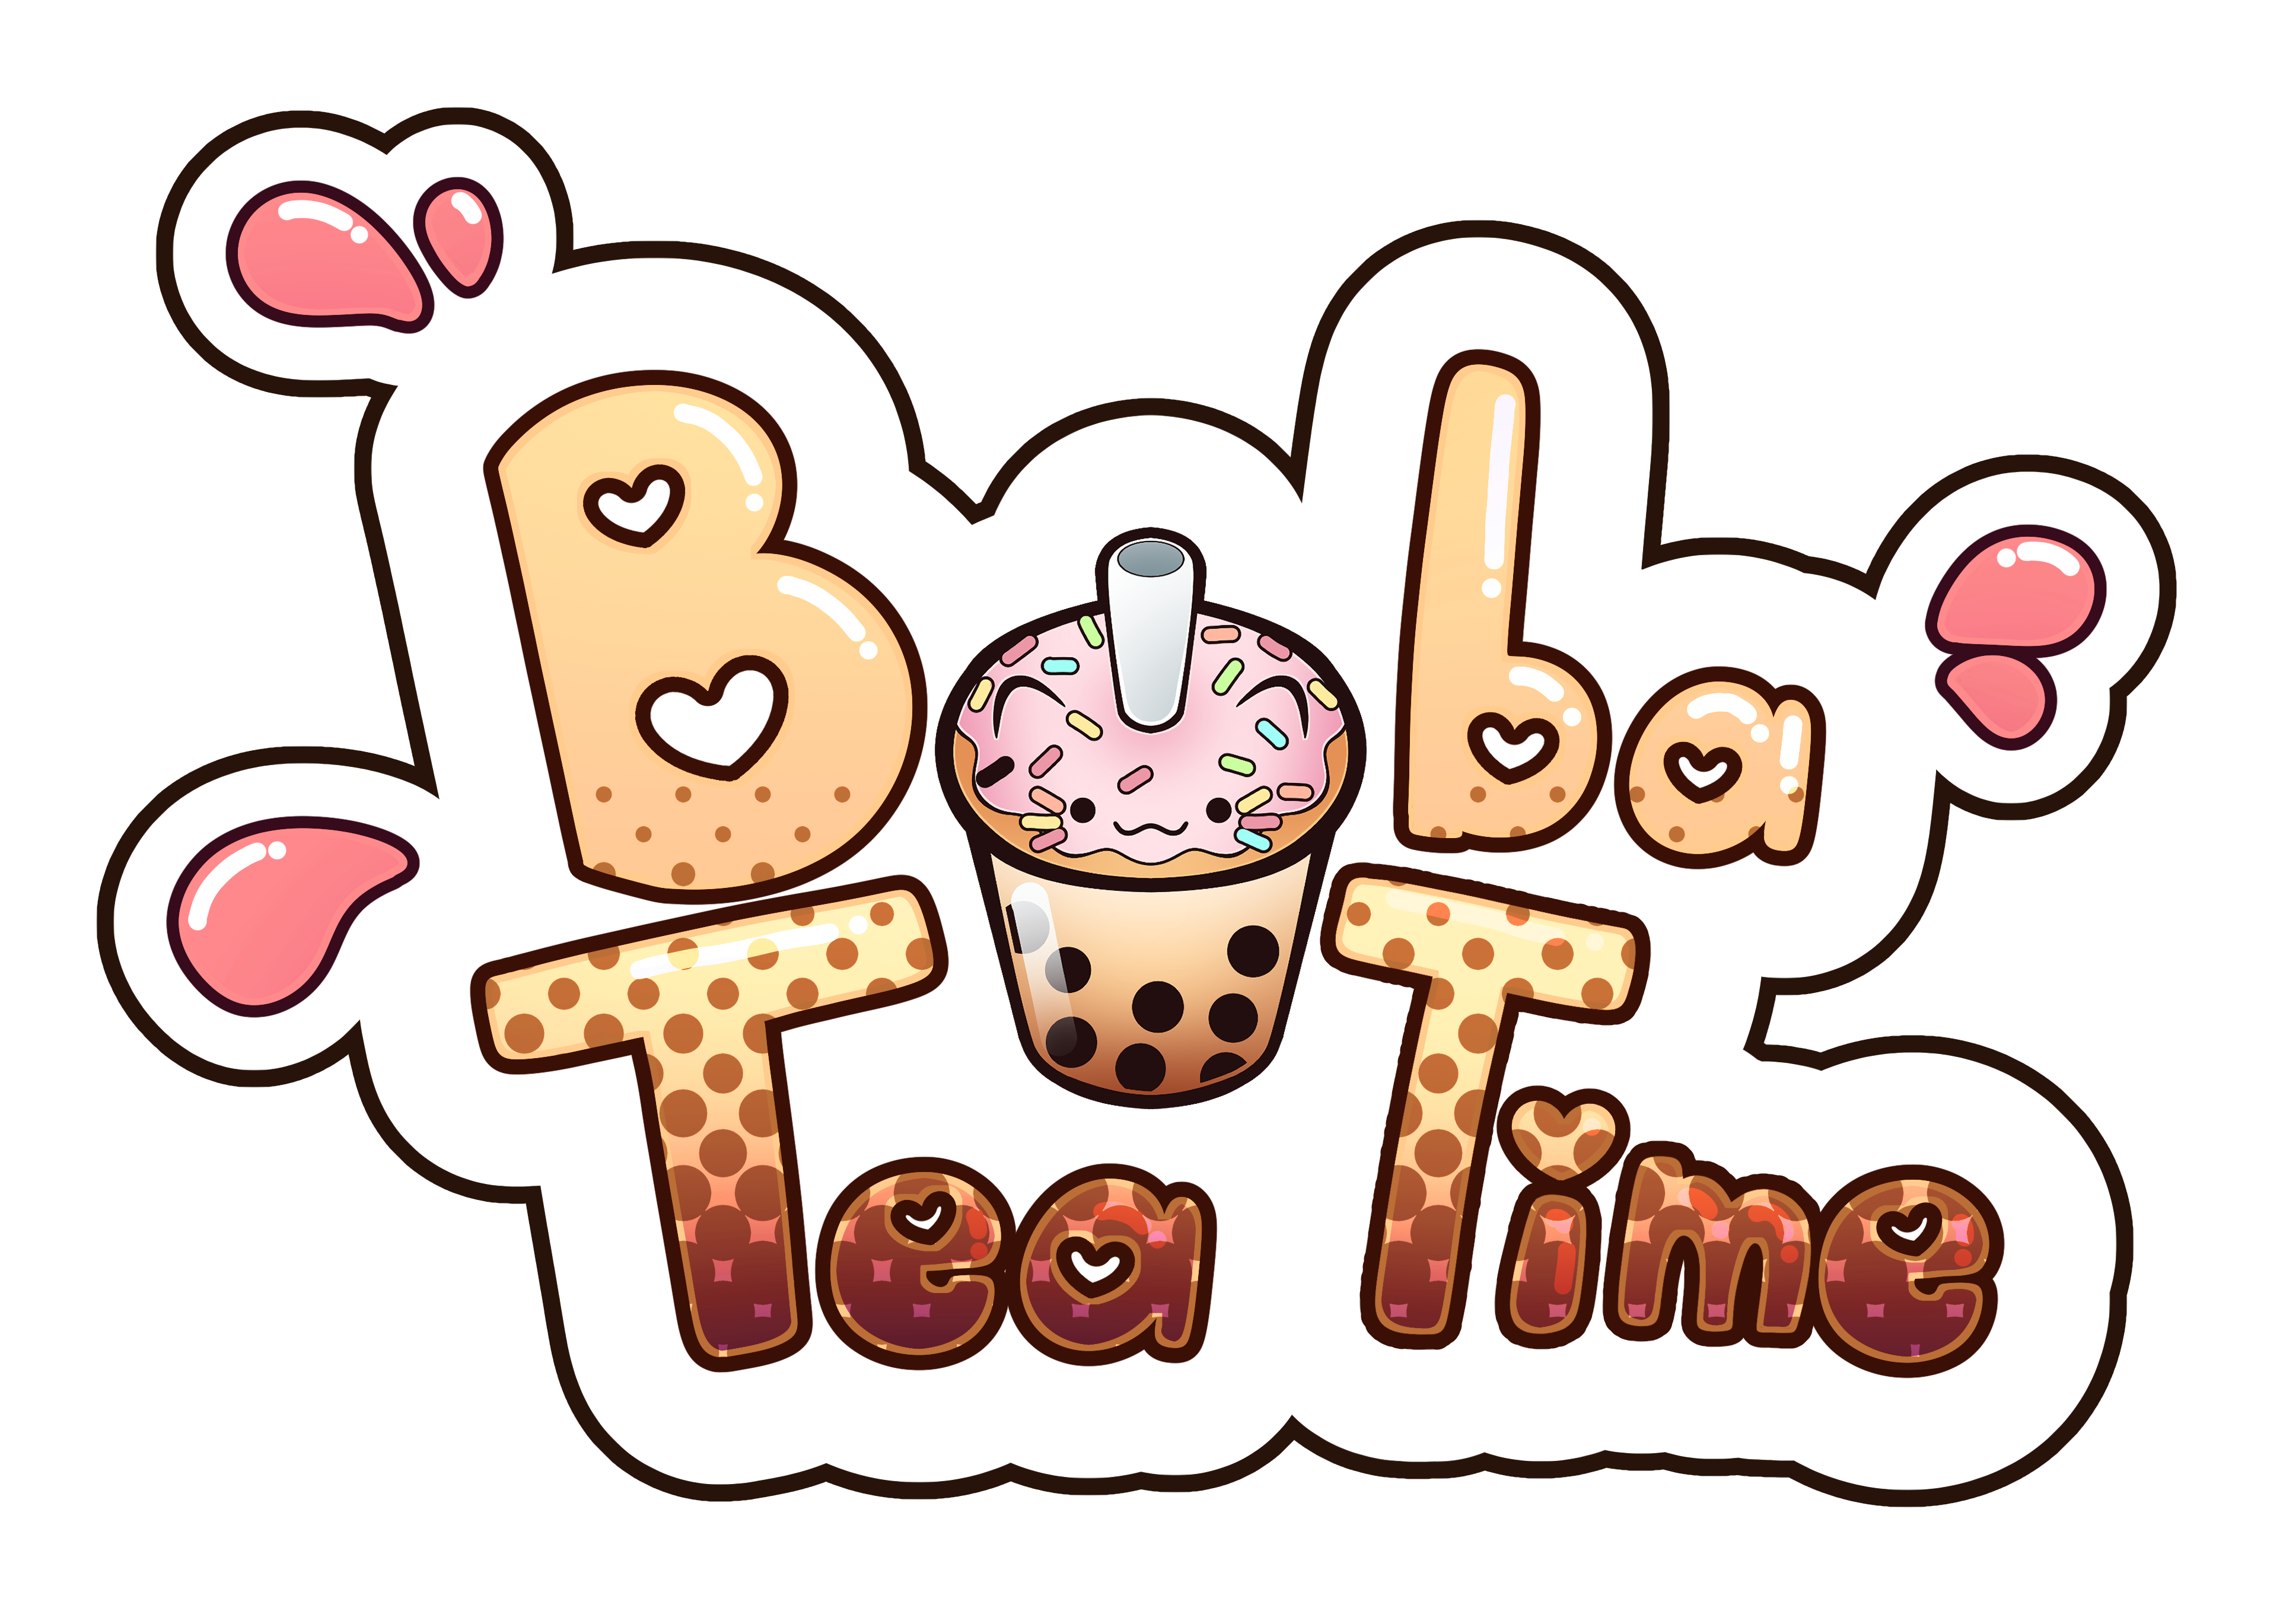 Boba tea time logo color 1